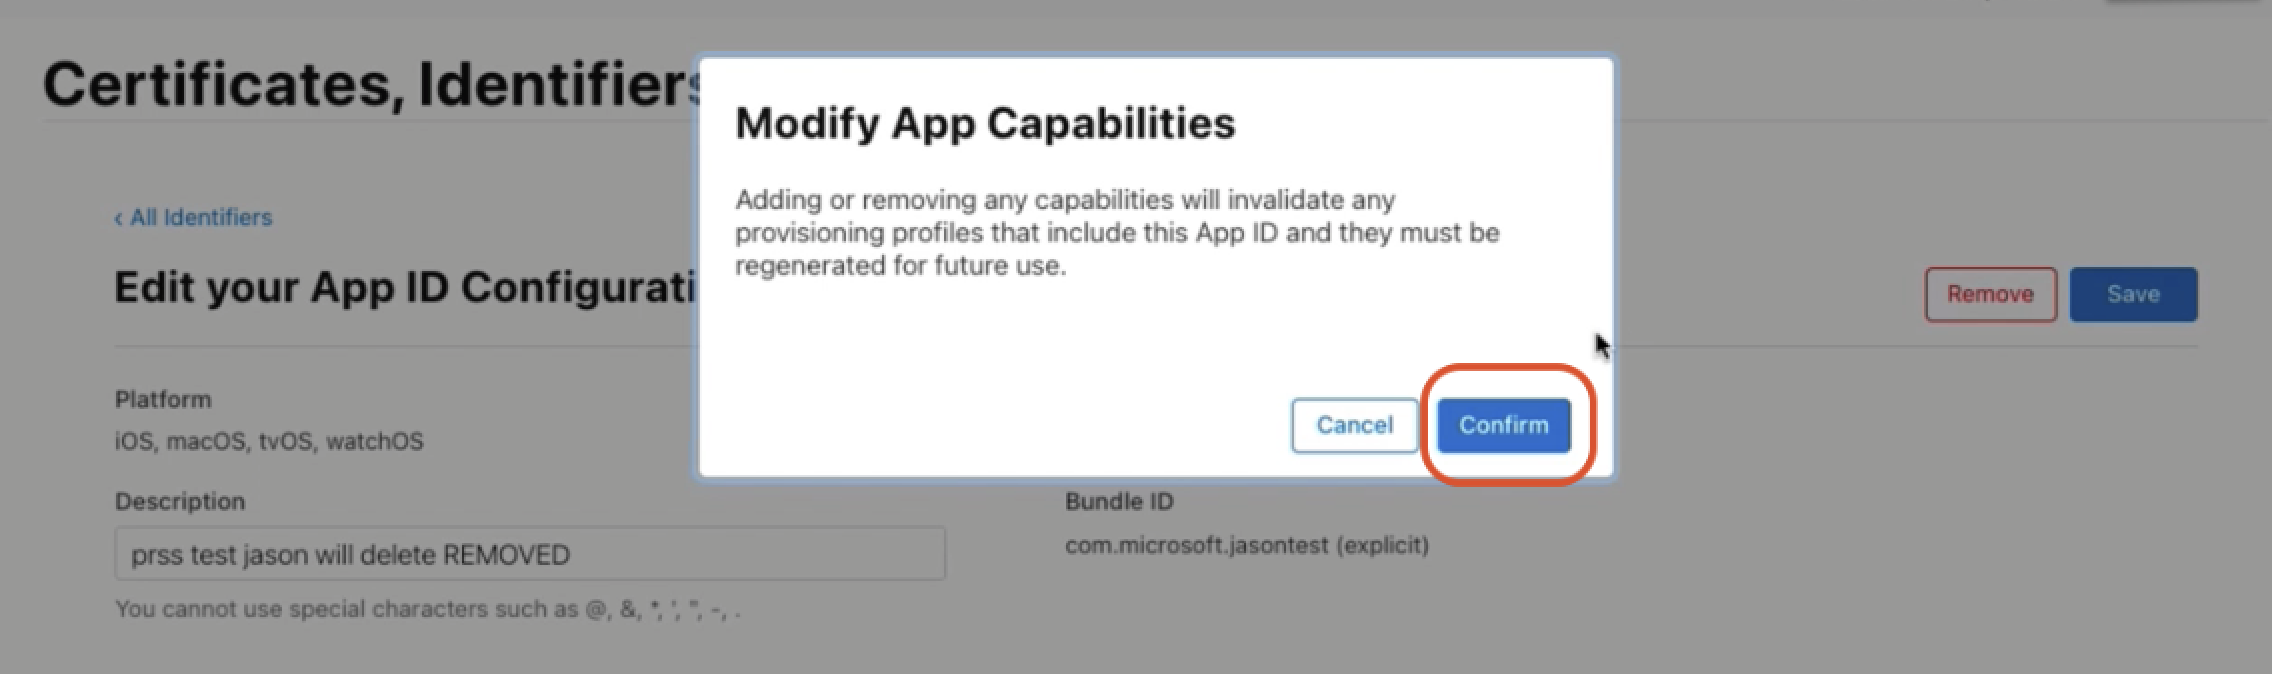 Uygulama özelliklerini değiştirmek için Onayla düğmesini gösteren ekran görüntüsü.